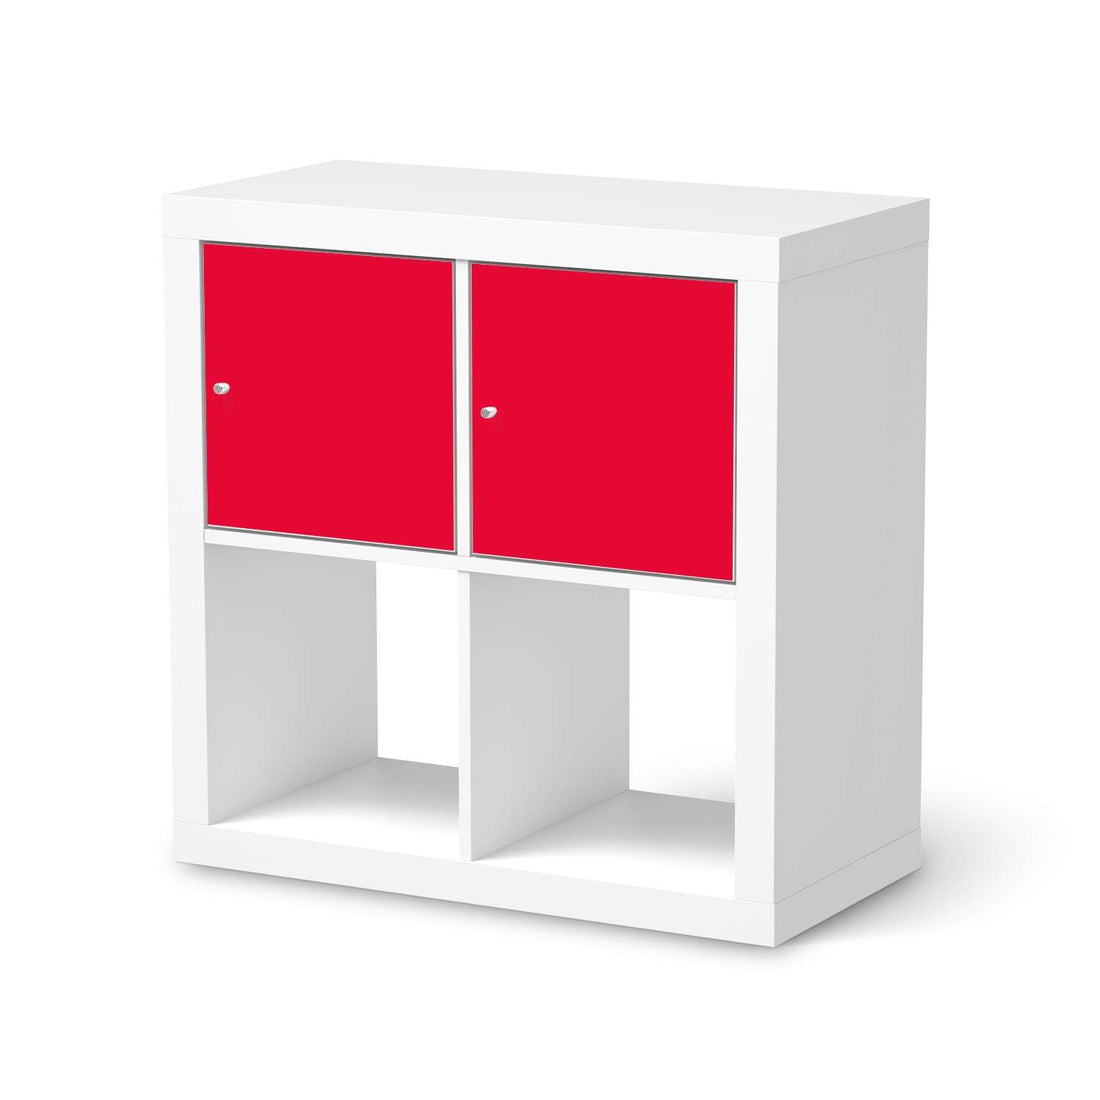 Möbelfolie Rot Light - IKEA Kallax Regal 2 Türen Quer  - weiss